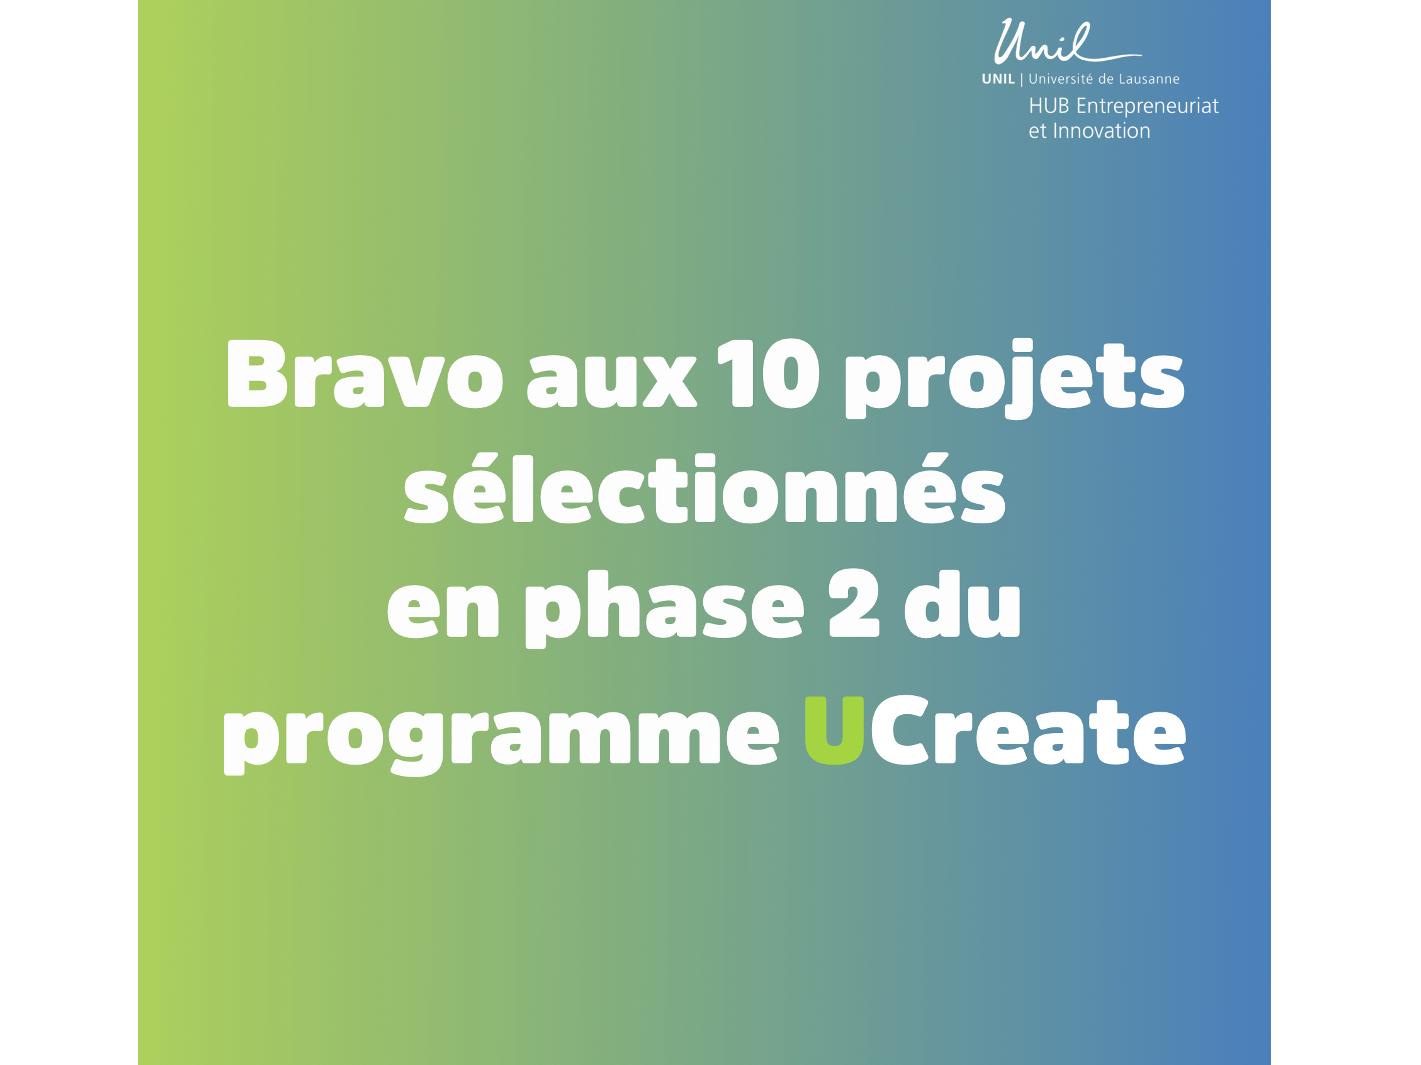 Découvrez les 10 projets sélectionnés pour la phase 2 de notre programme UCreate